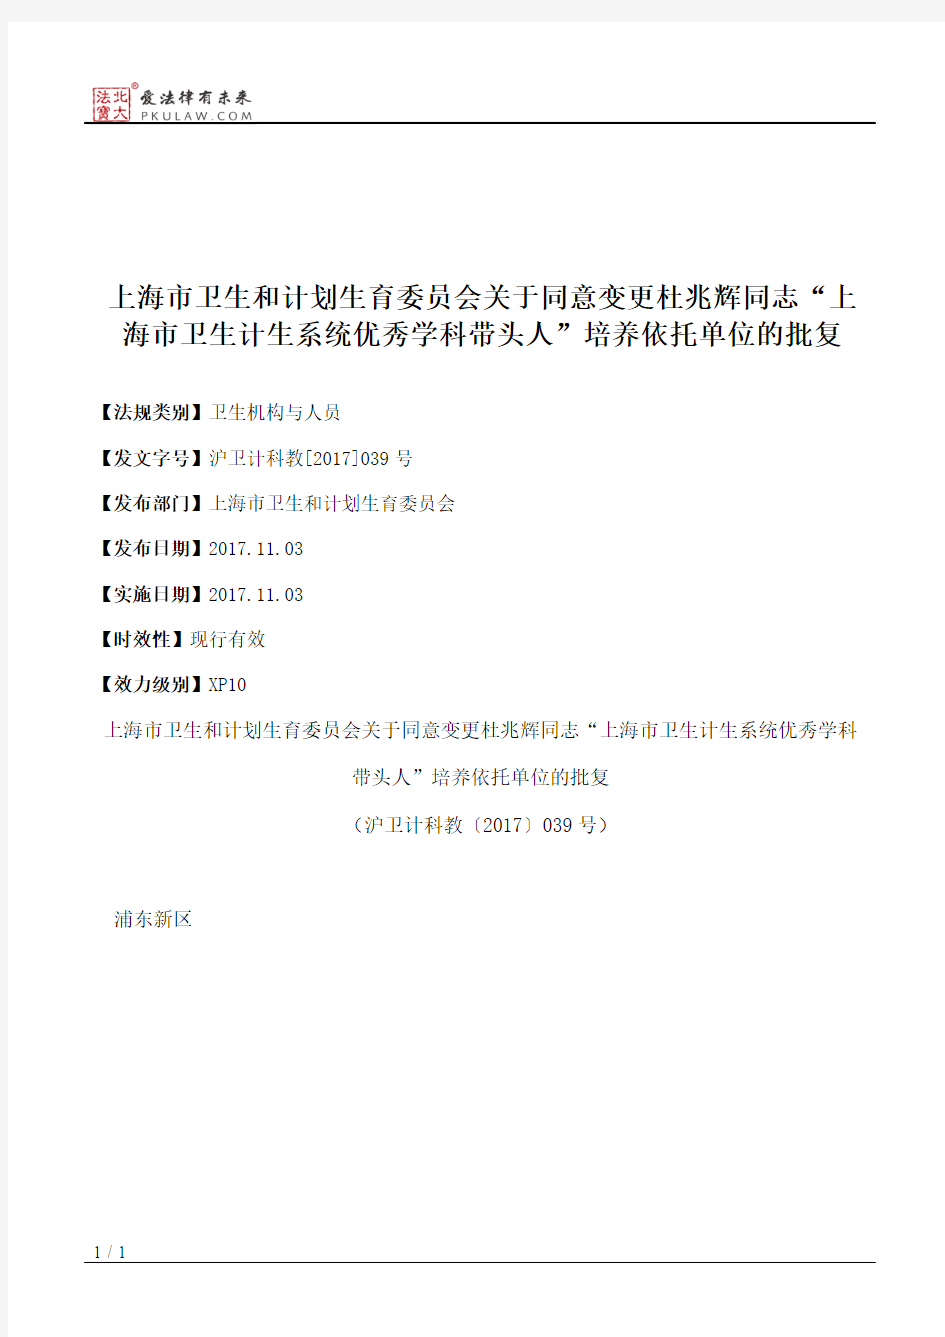 上海市卫生和计划生育委员会关于同意变更杜兆辉同志“上海市卫生